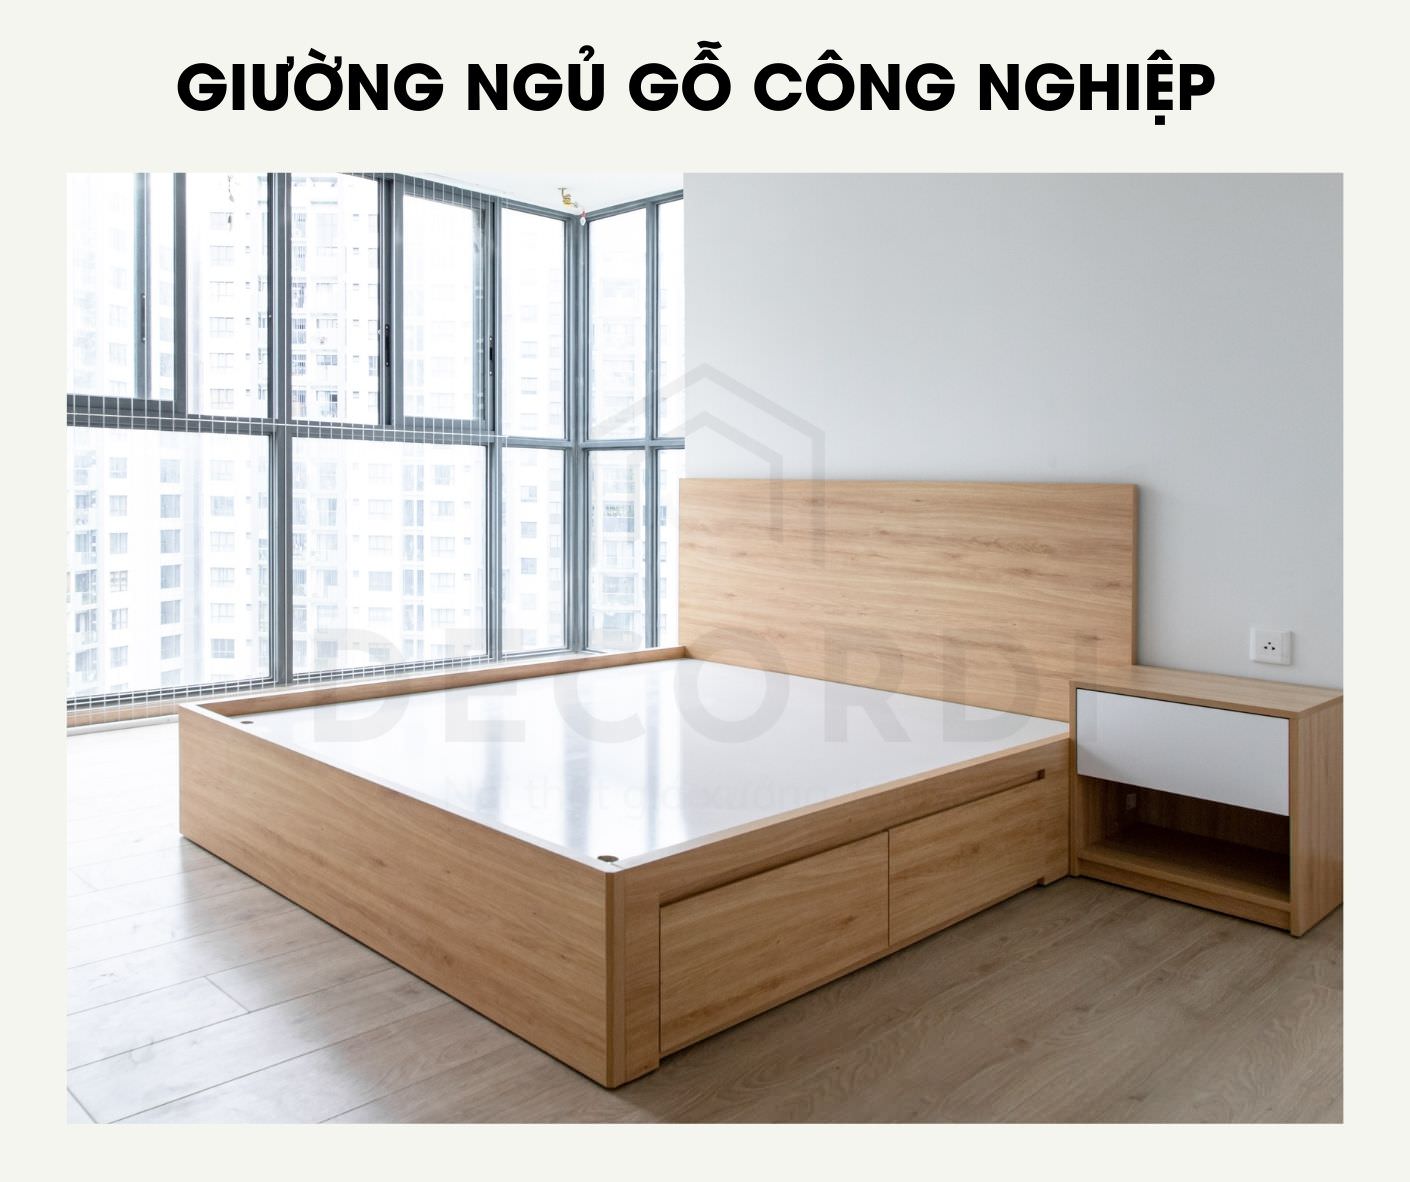 Mẫu giường ngủ gỗ MFD được nhiều gia chủ yêu thích